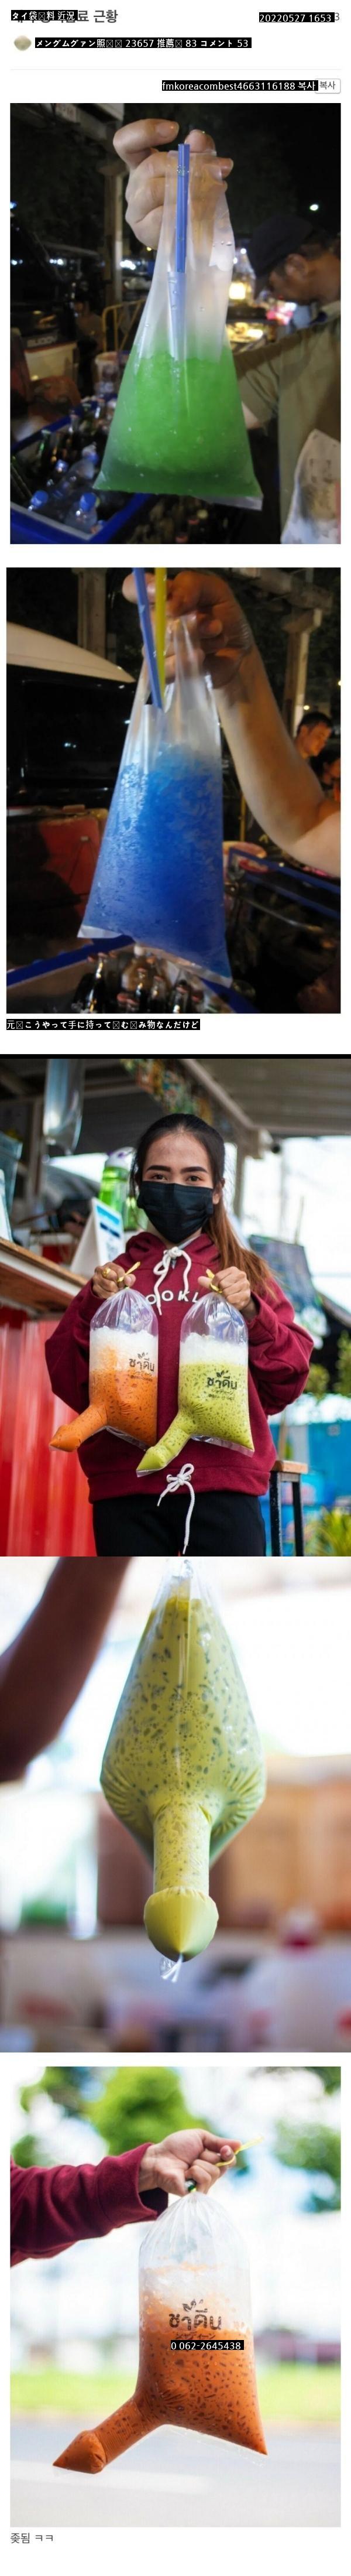 タイ袋飲料の近況